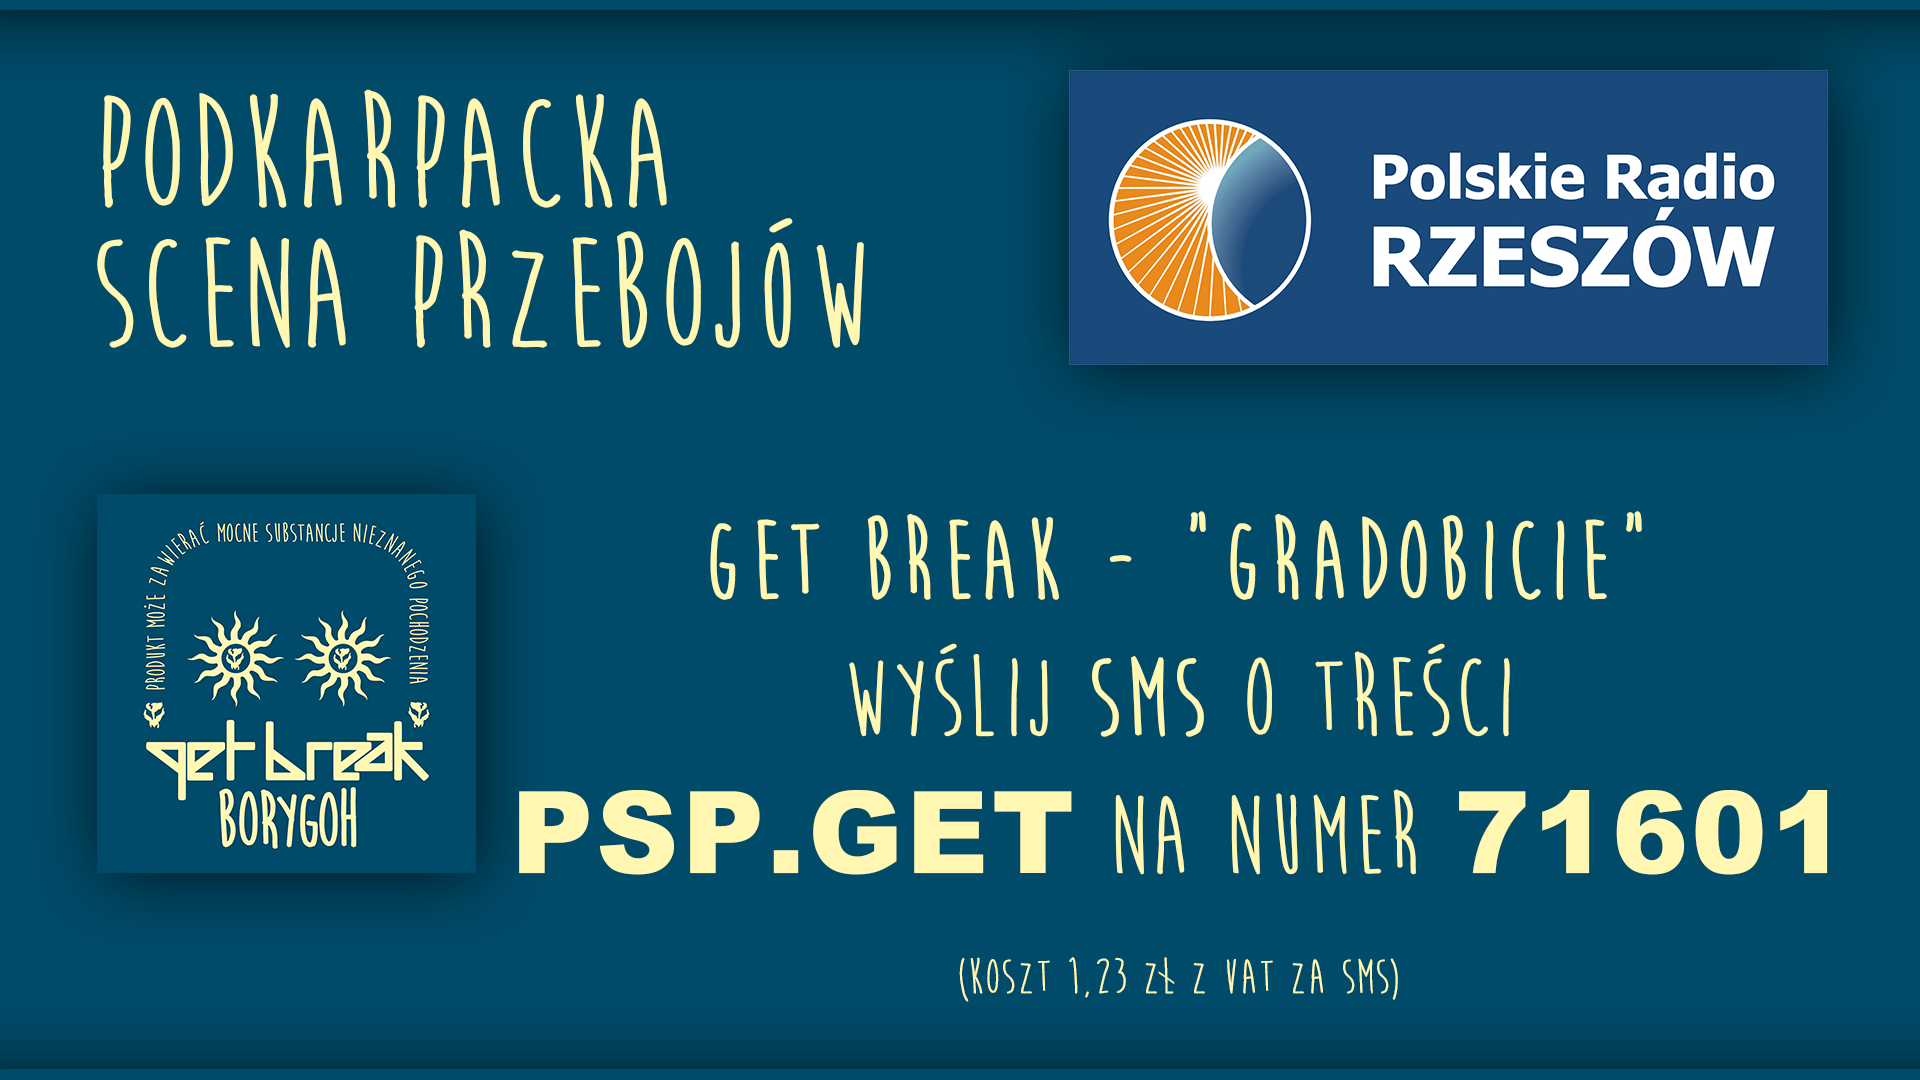 PODKARPACKA SCENA PRZEBOJóW - Radio Rzeszów GET BREAK GRADOBICIE. Głosowanie na utwór.